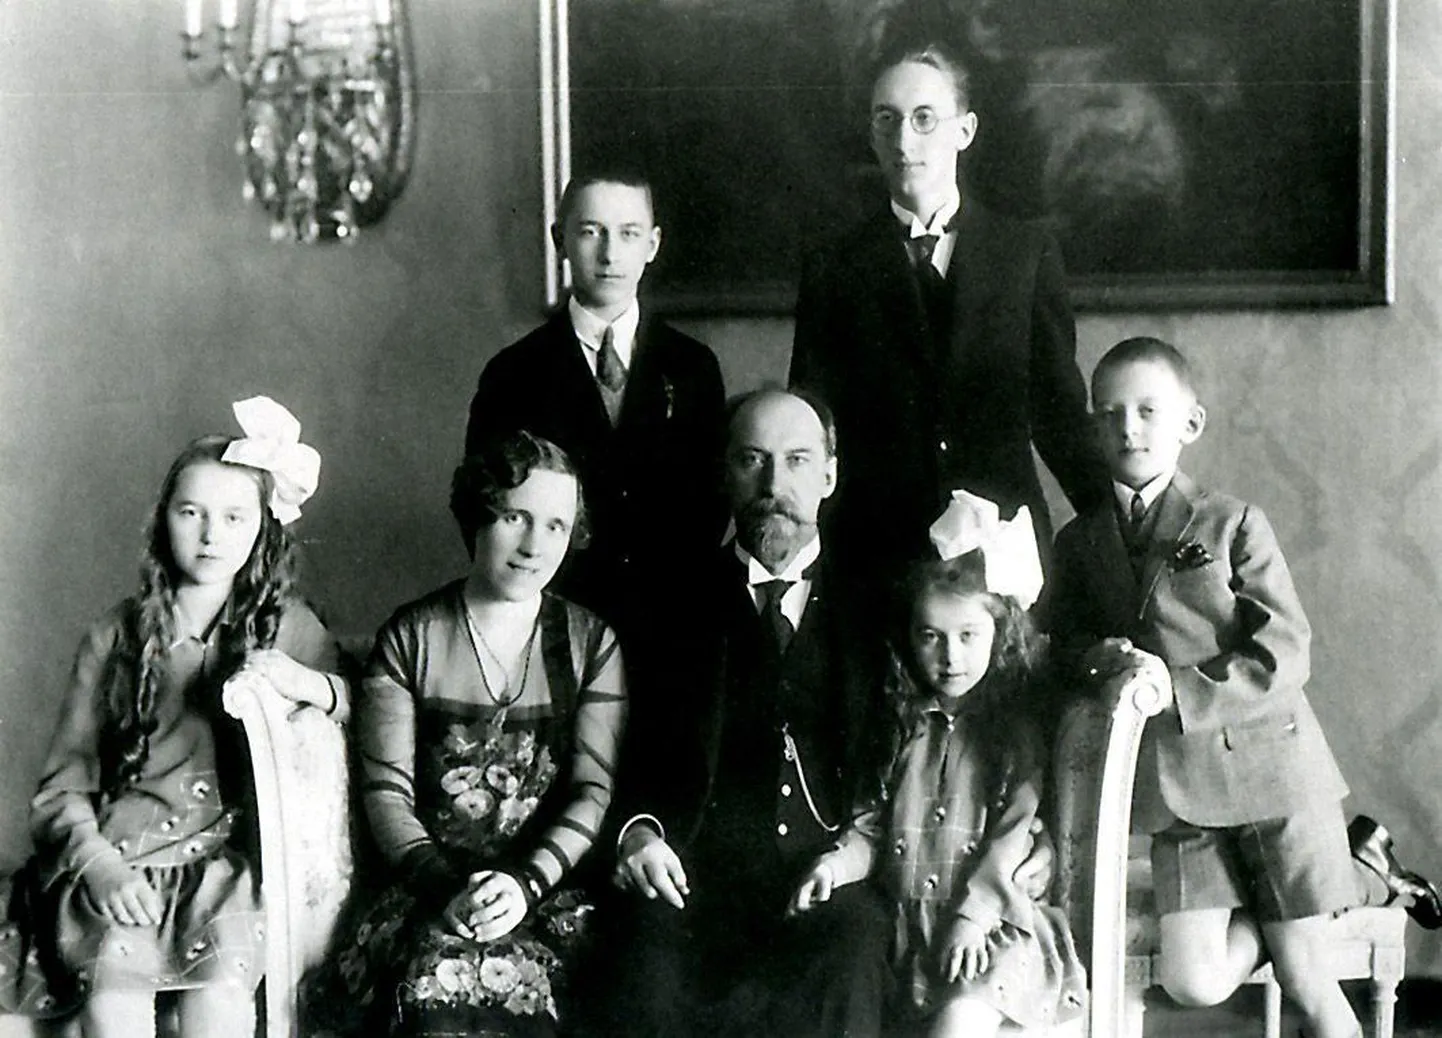 Riigimees ja Postimehe omanik Jaan Tõnisson oli paljulapseline isa. 1928. aastal tehtud perepildil istuvad tütar Hilja, abikaasa Hilda, pereisa Jaan ja tütar Lagle, seisavad pojad Heldur, Ilmar ja Lembit-Rein.